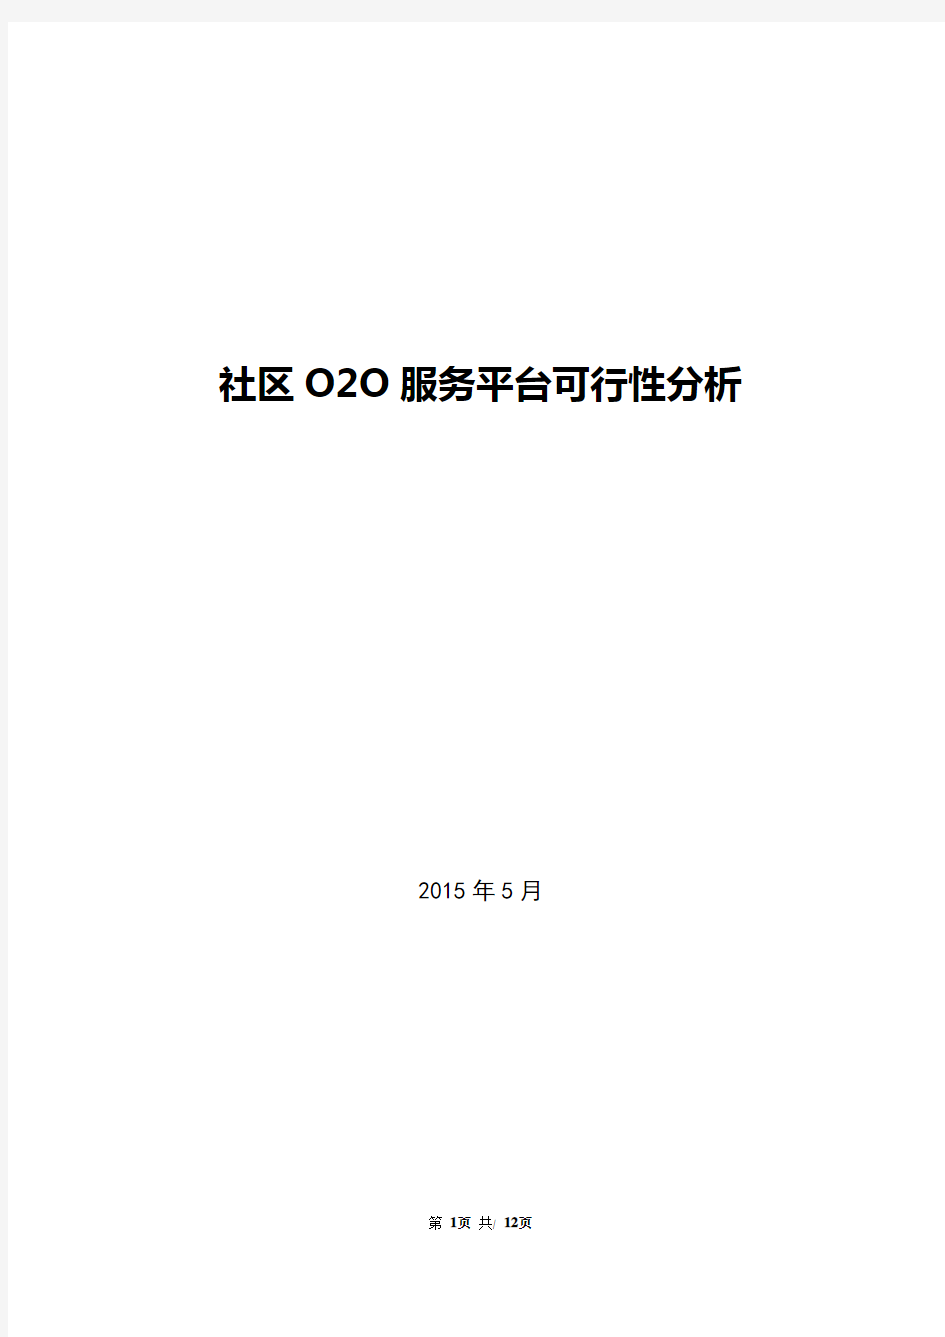 社区O2O服务平台可行性分析